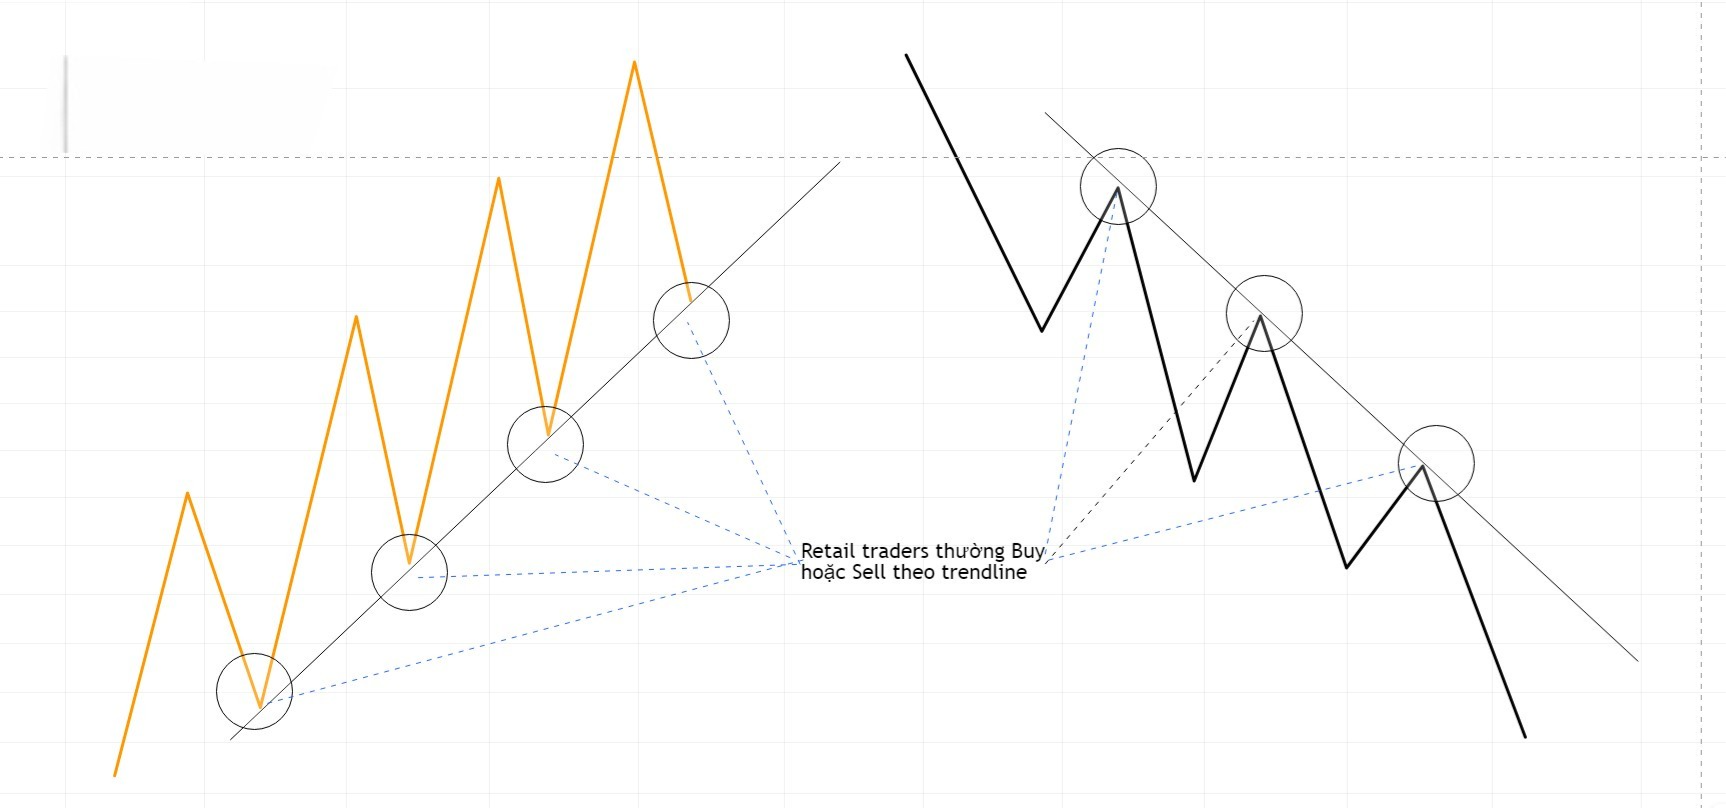 Hình 3. Trader thường giao dịch theo Trendline.